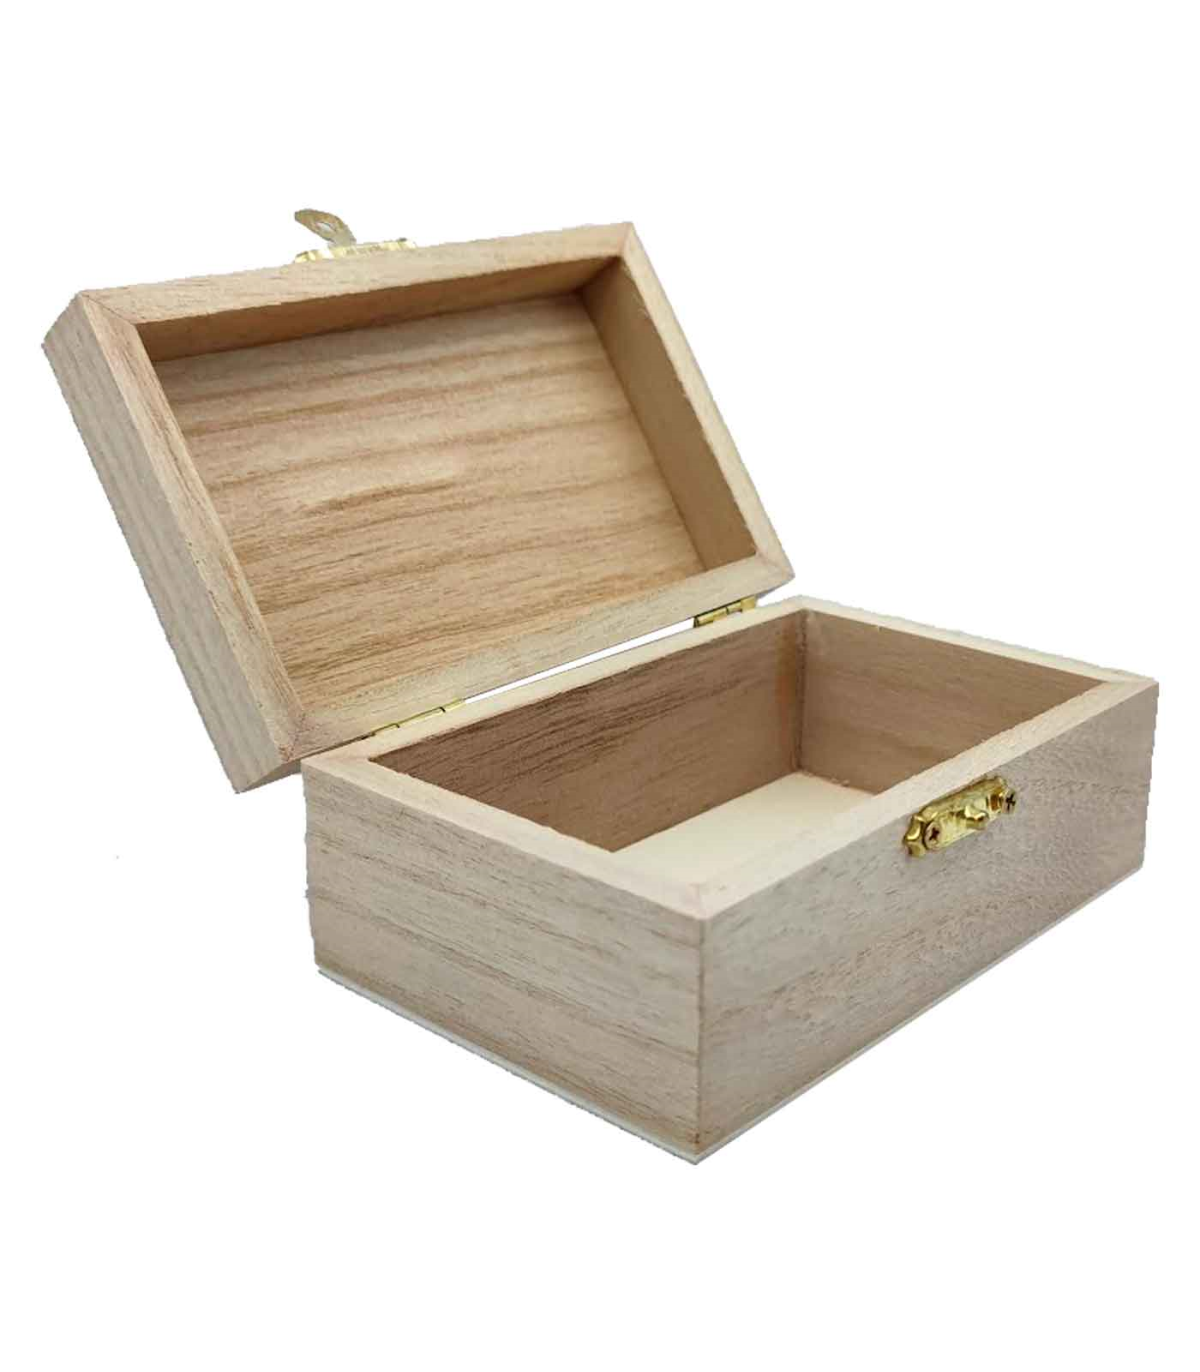 Tradineur - Pequeña caja de madera con tapa - Caja de